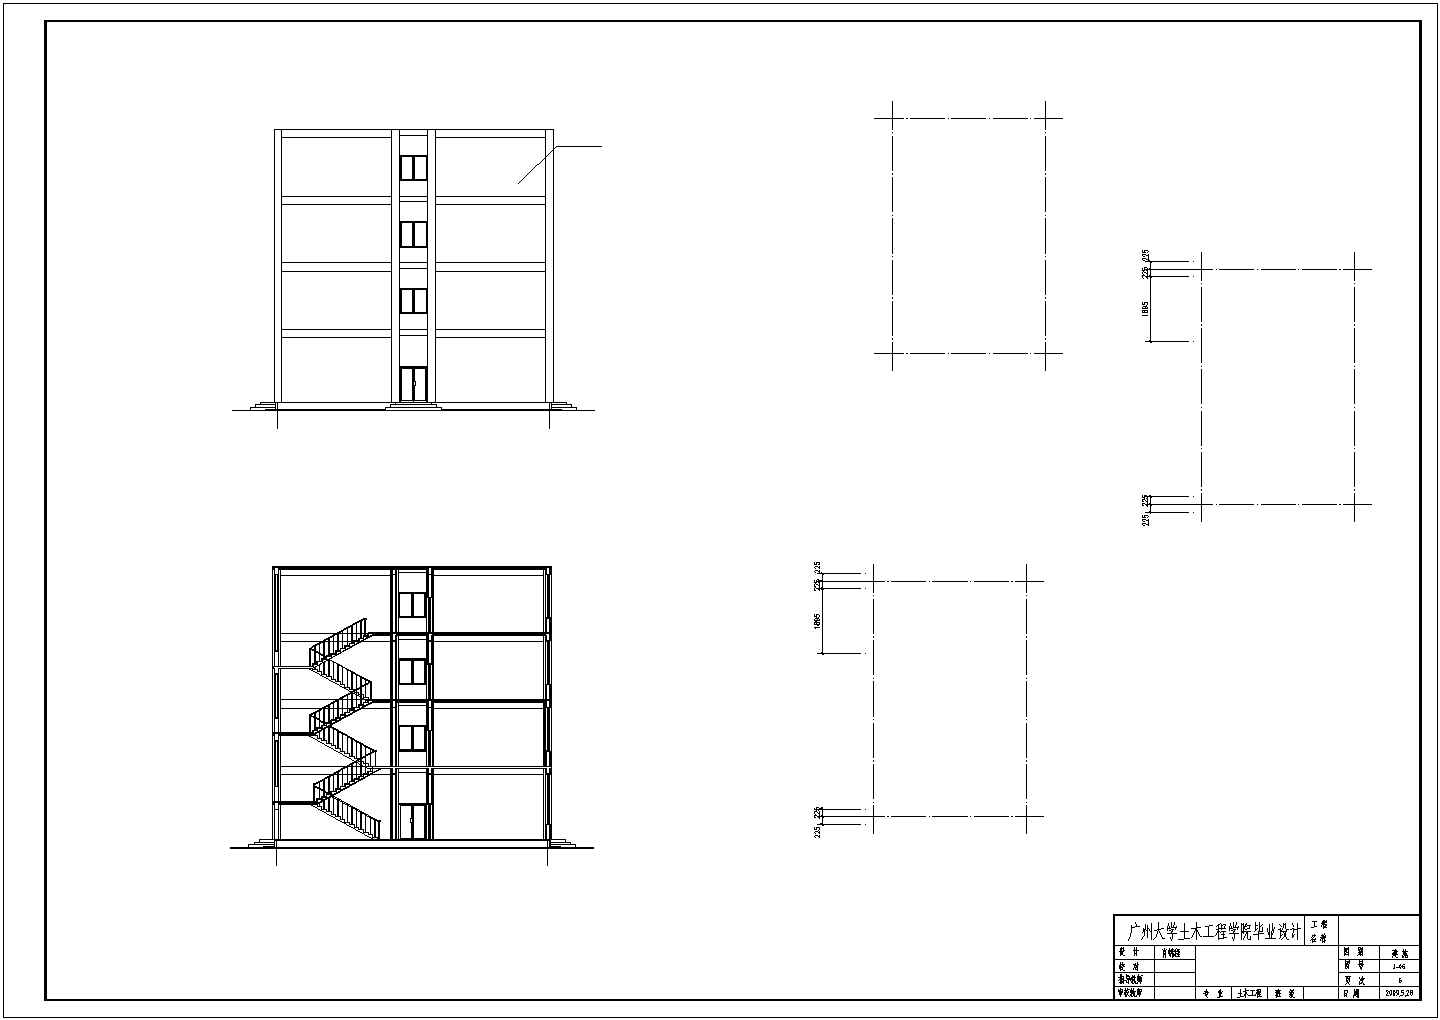 5247平米四层教学楼毕业设计（计算书、PKPM模型、建筑图、部分结构图）